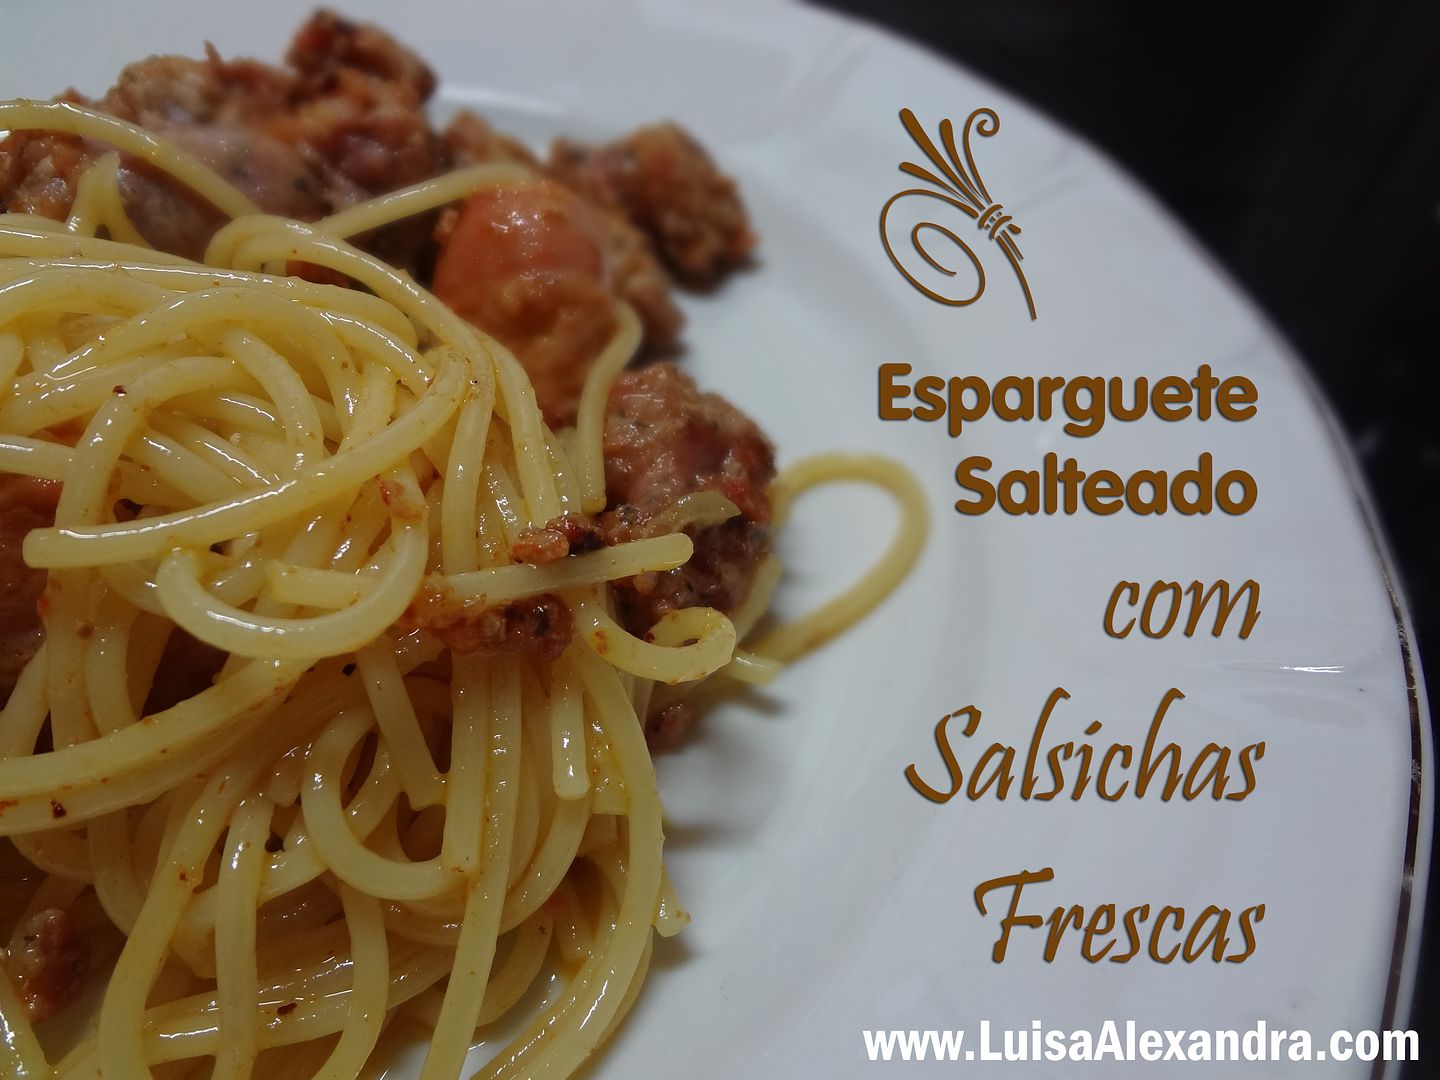 Esparguete Salteado com Salsichas Frescas photo DSC06170.jpg